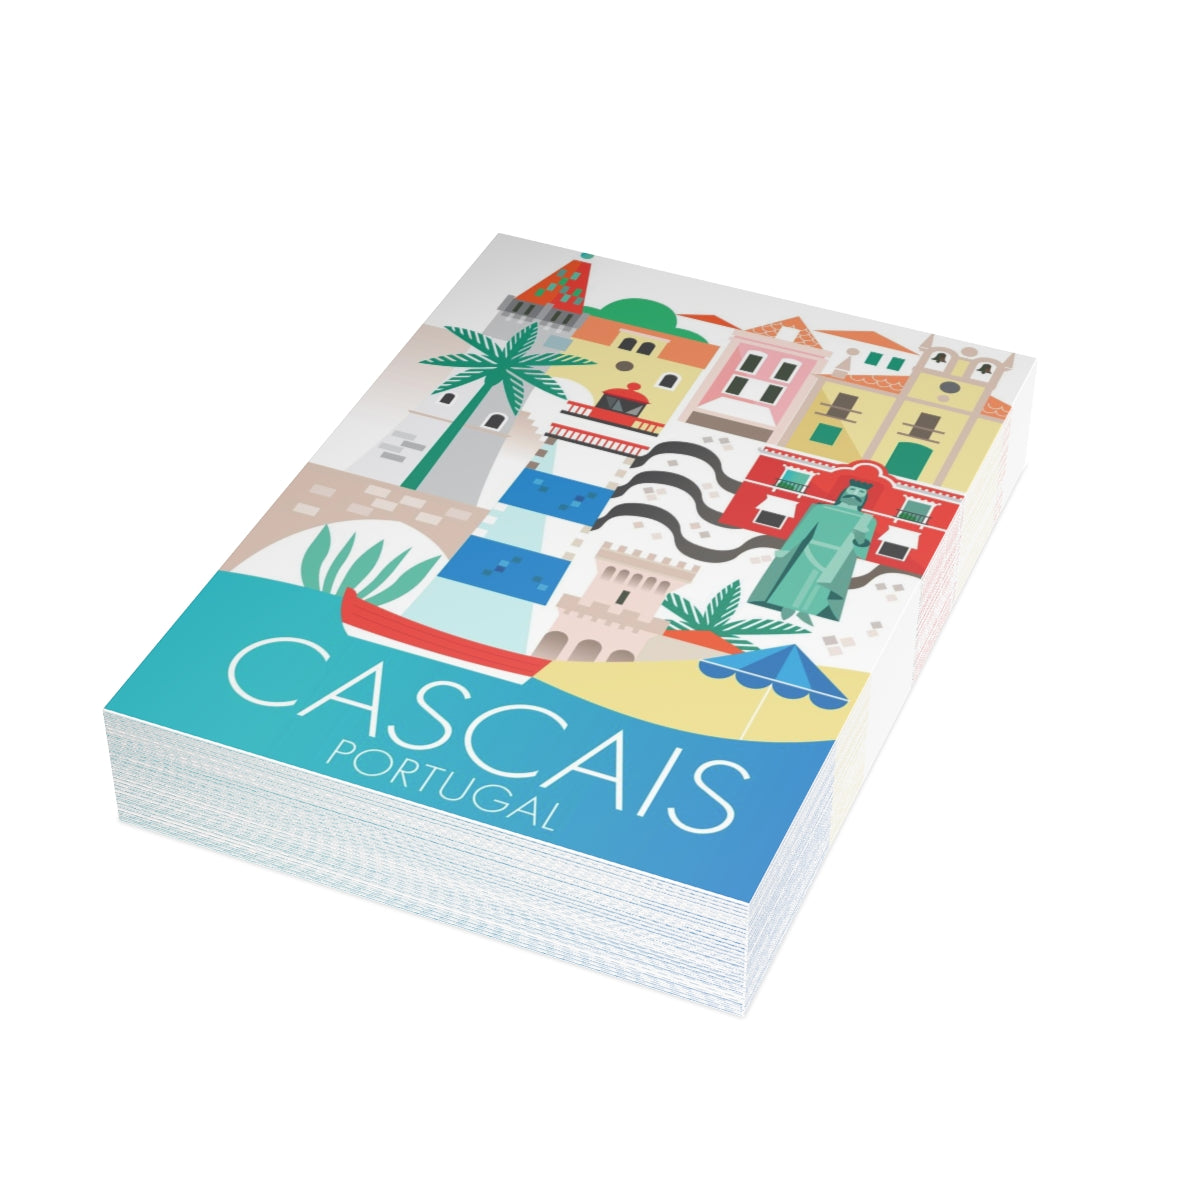 Cascais gefaltete matte Notizkarten + Umschläge (10 Stück) 